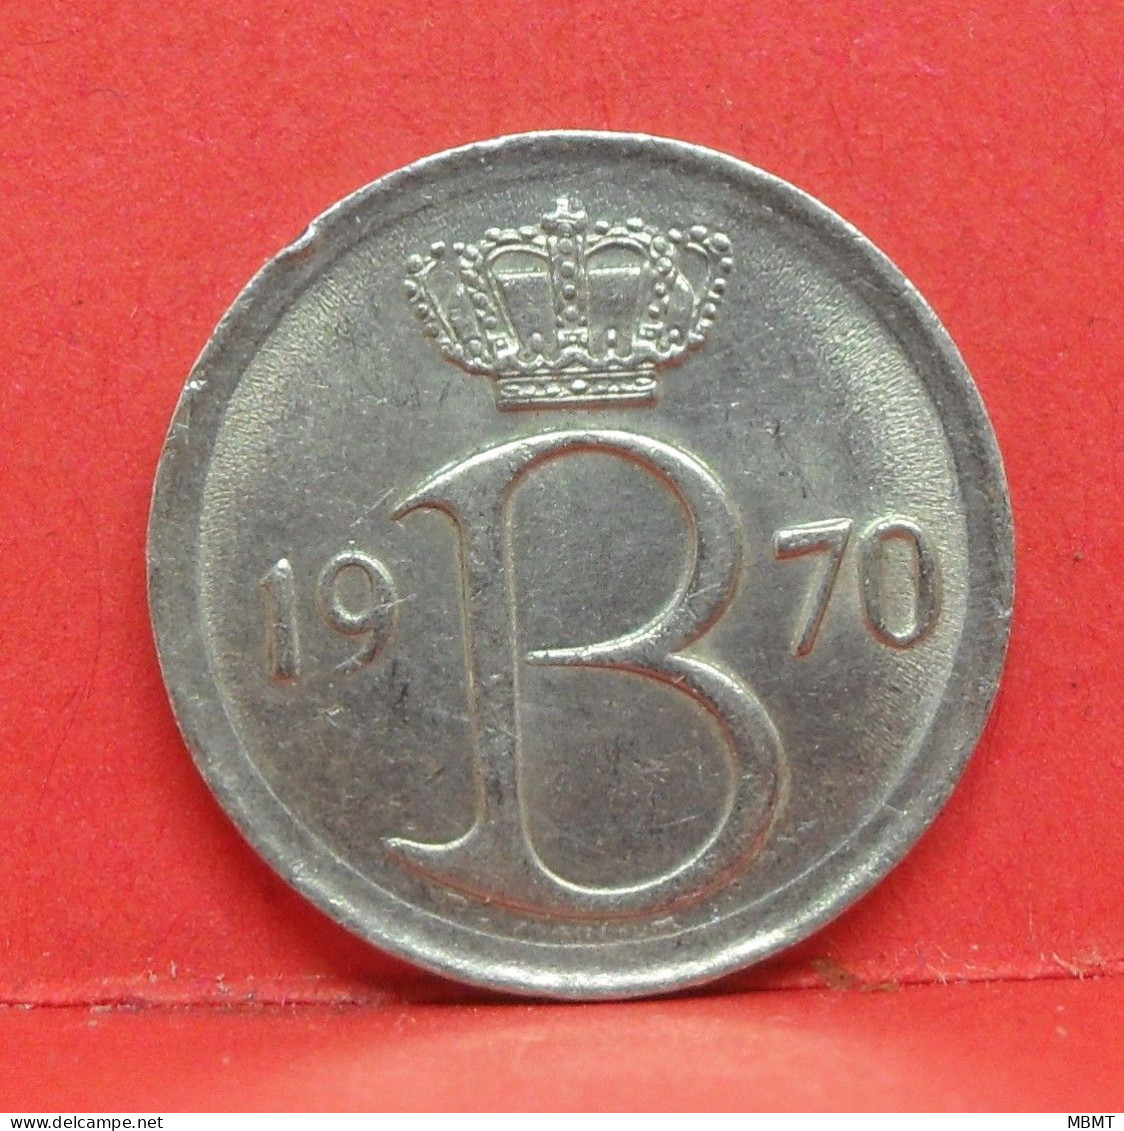 25 Centimes 1970 - TTB - Pièce Monnaie Belgique - Article N°1687 - 25 Cents